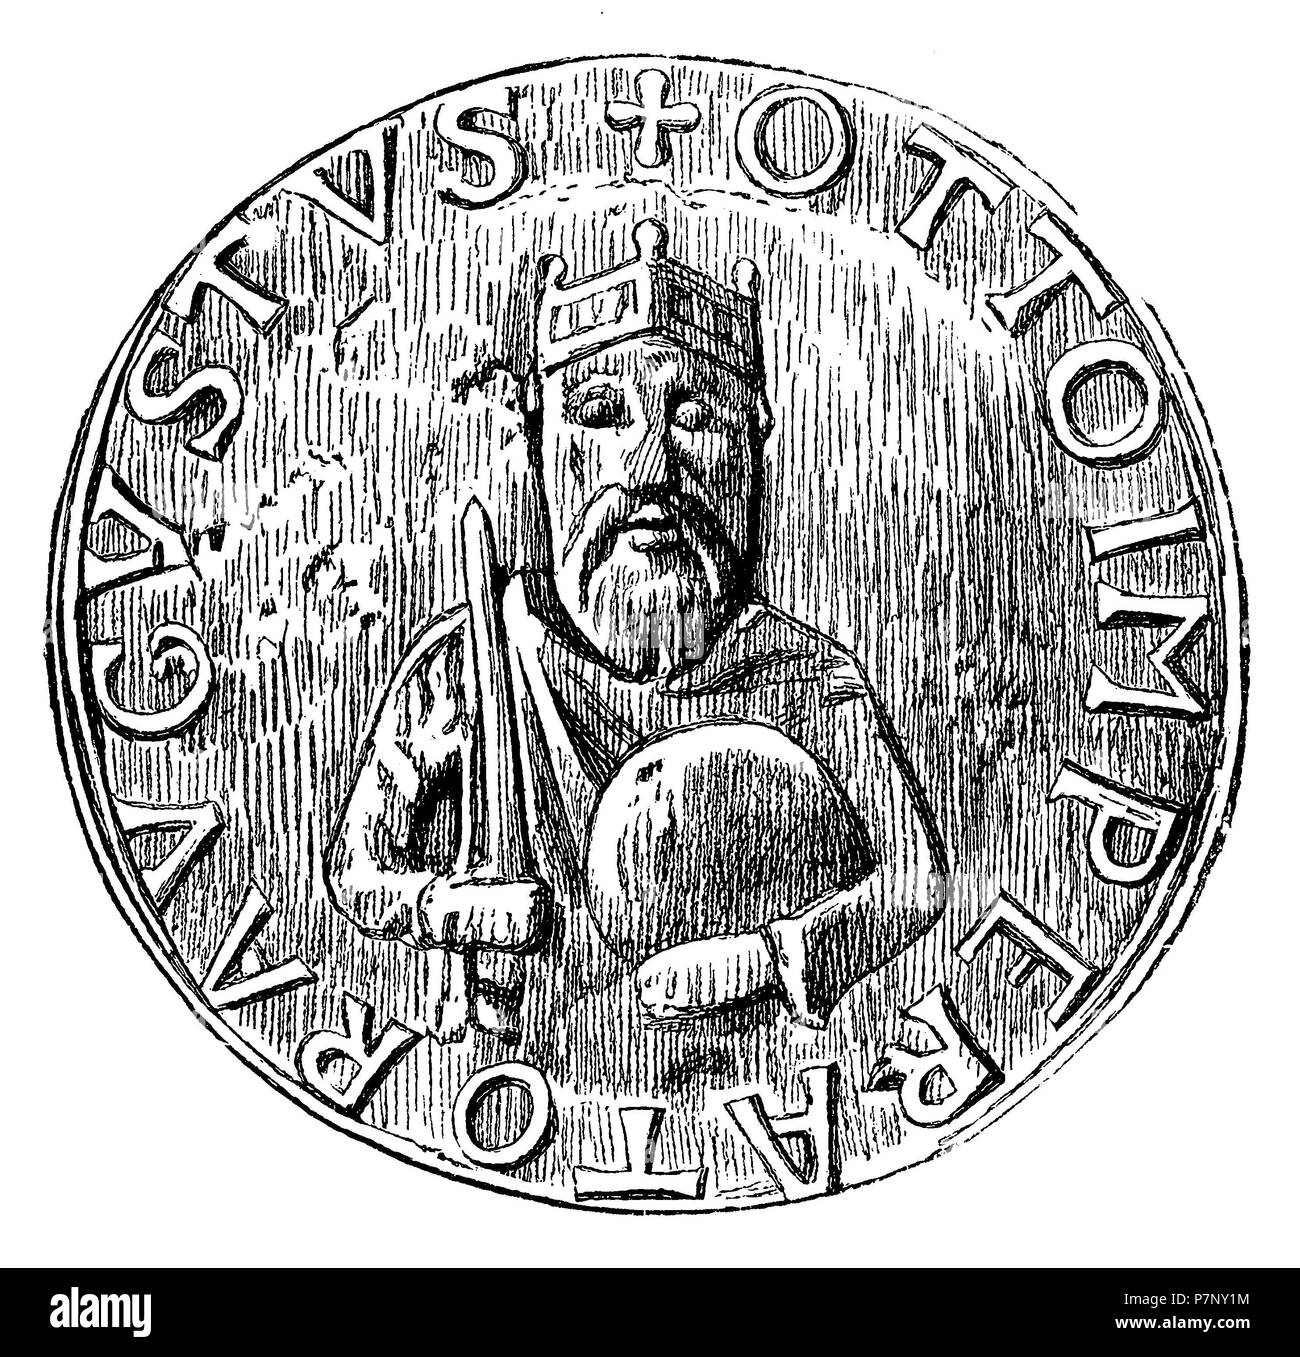 Otto I (HRR), le Grand, roi allemand (936-973) et empereur Roman-German (depuis 962). Sceau de l'empereur Otton le Grand, 1899 Banque D'Images